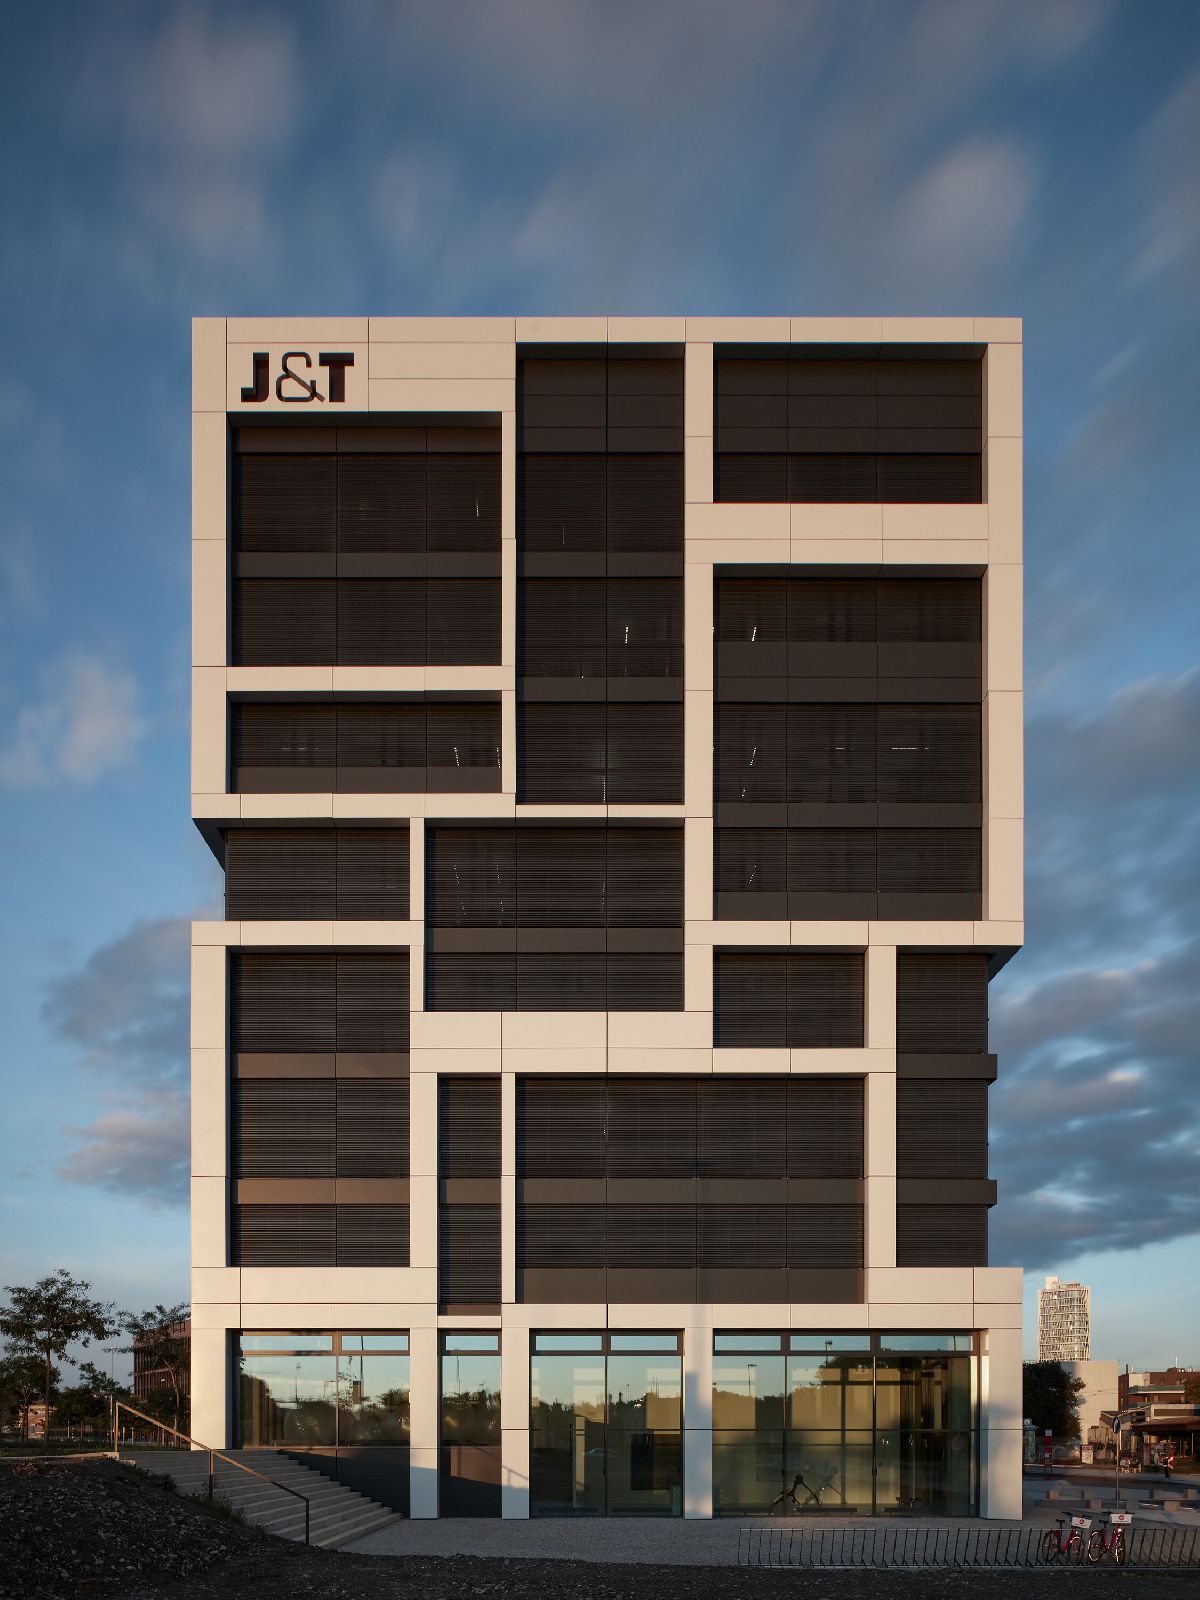 J&T headquarters